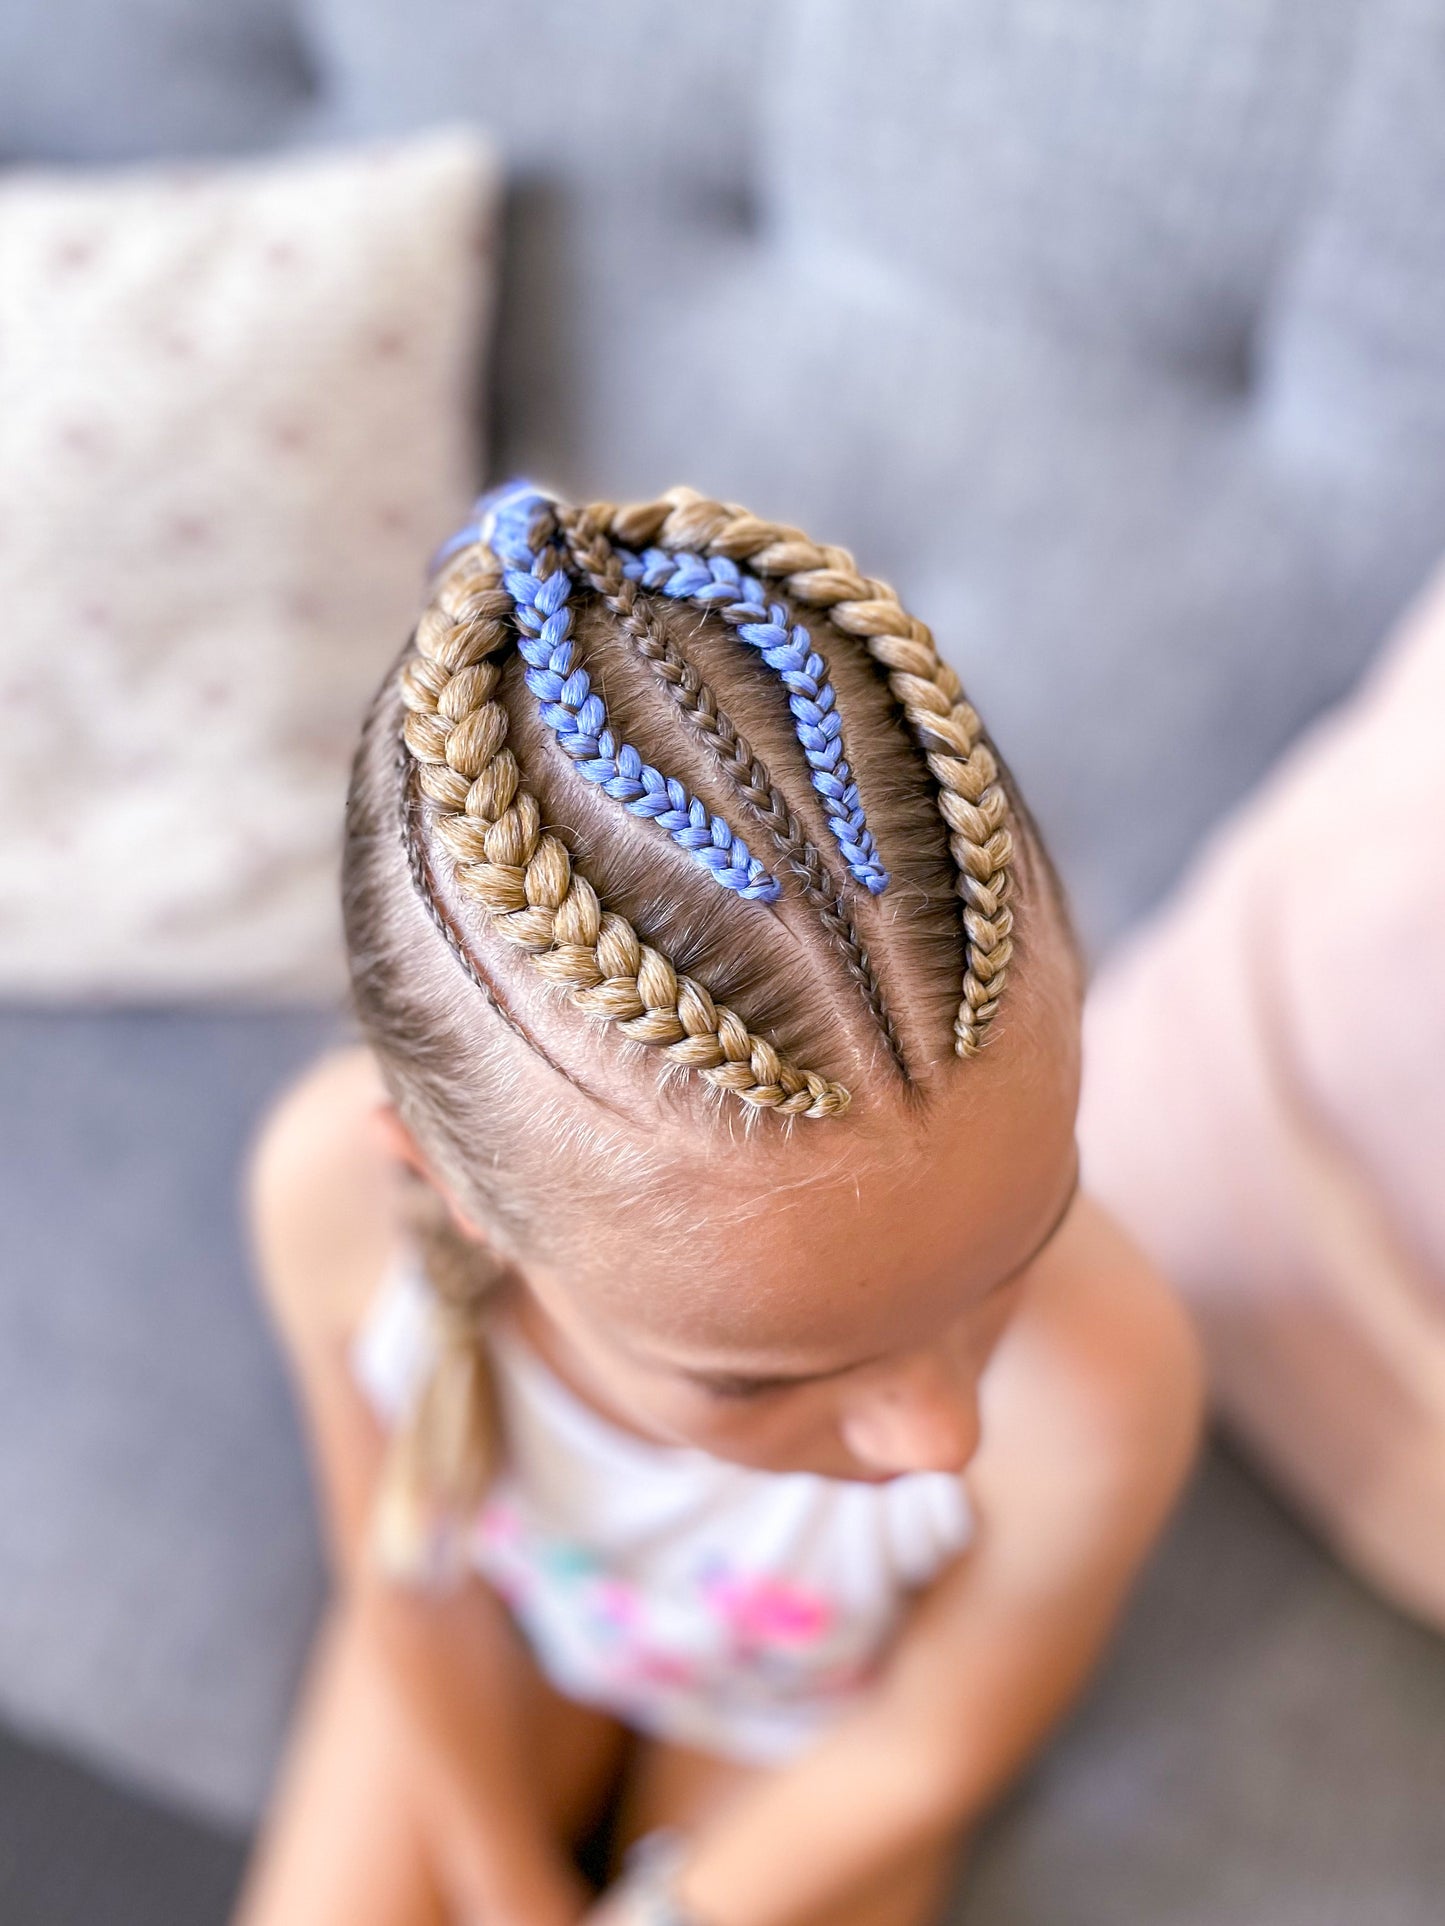 SAPPHIRE BLUE Braiding hair extensions